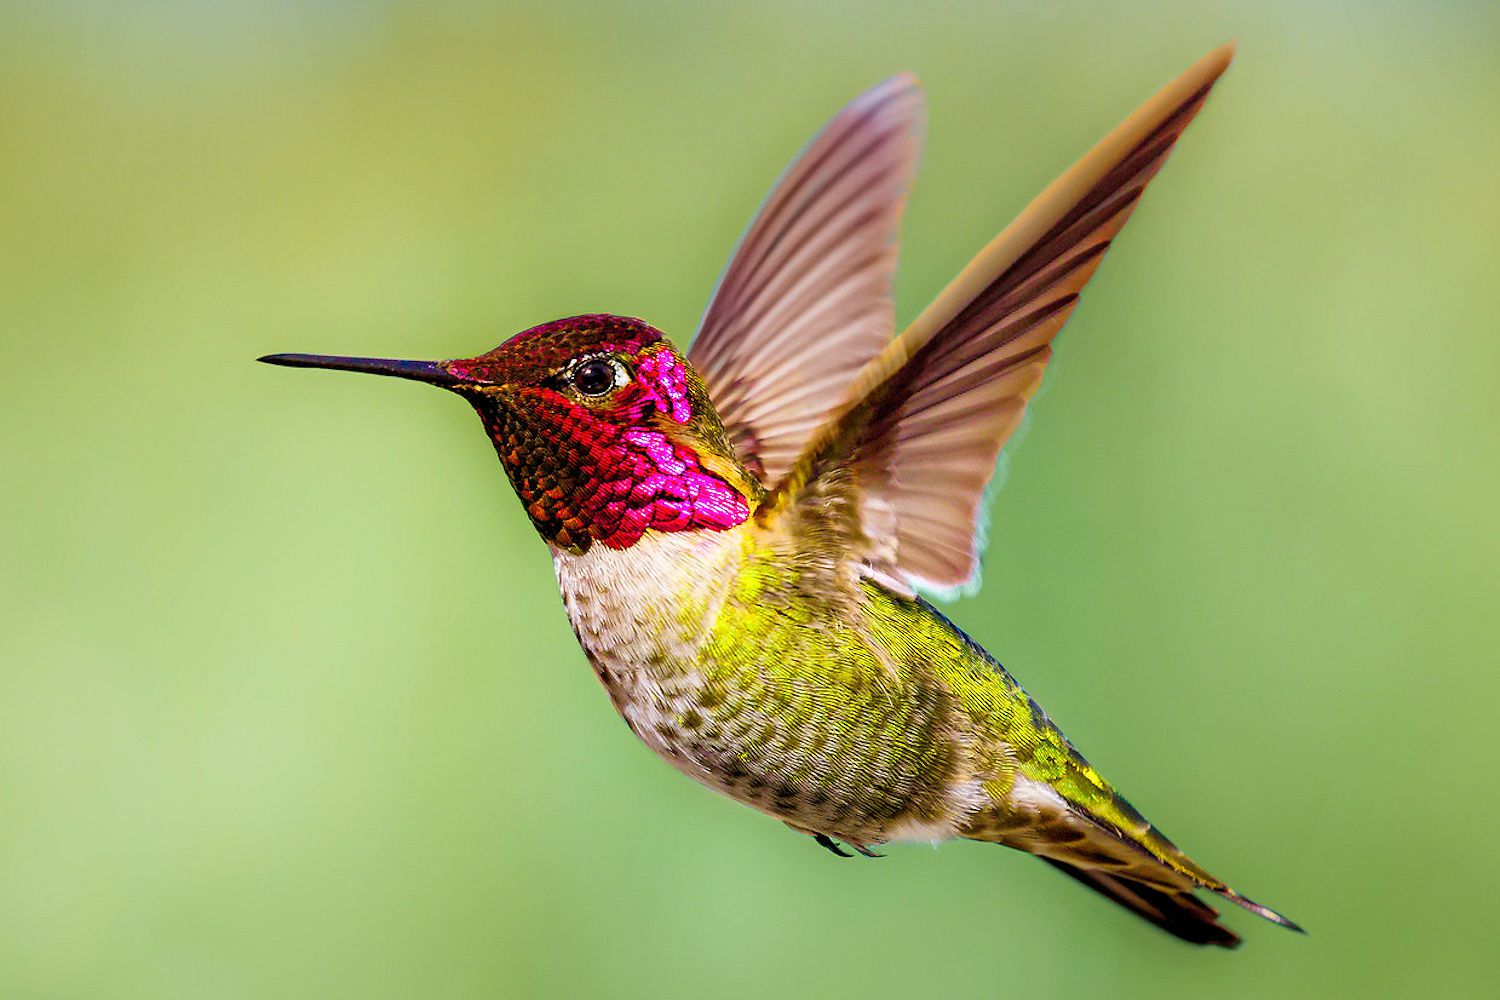 Top 20 Loài Chim Đẹp Nhất Thế Giới